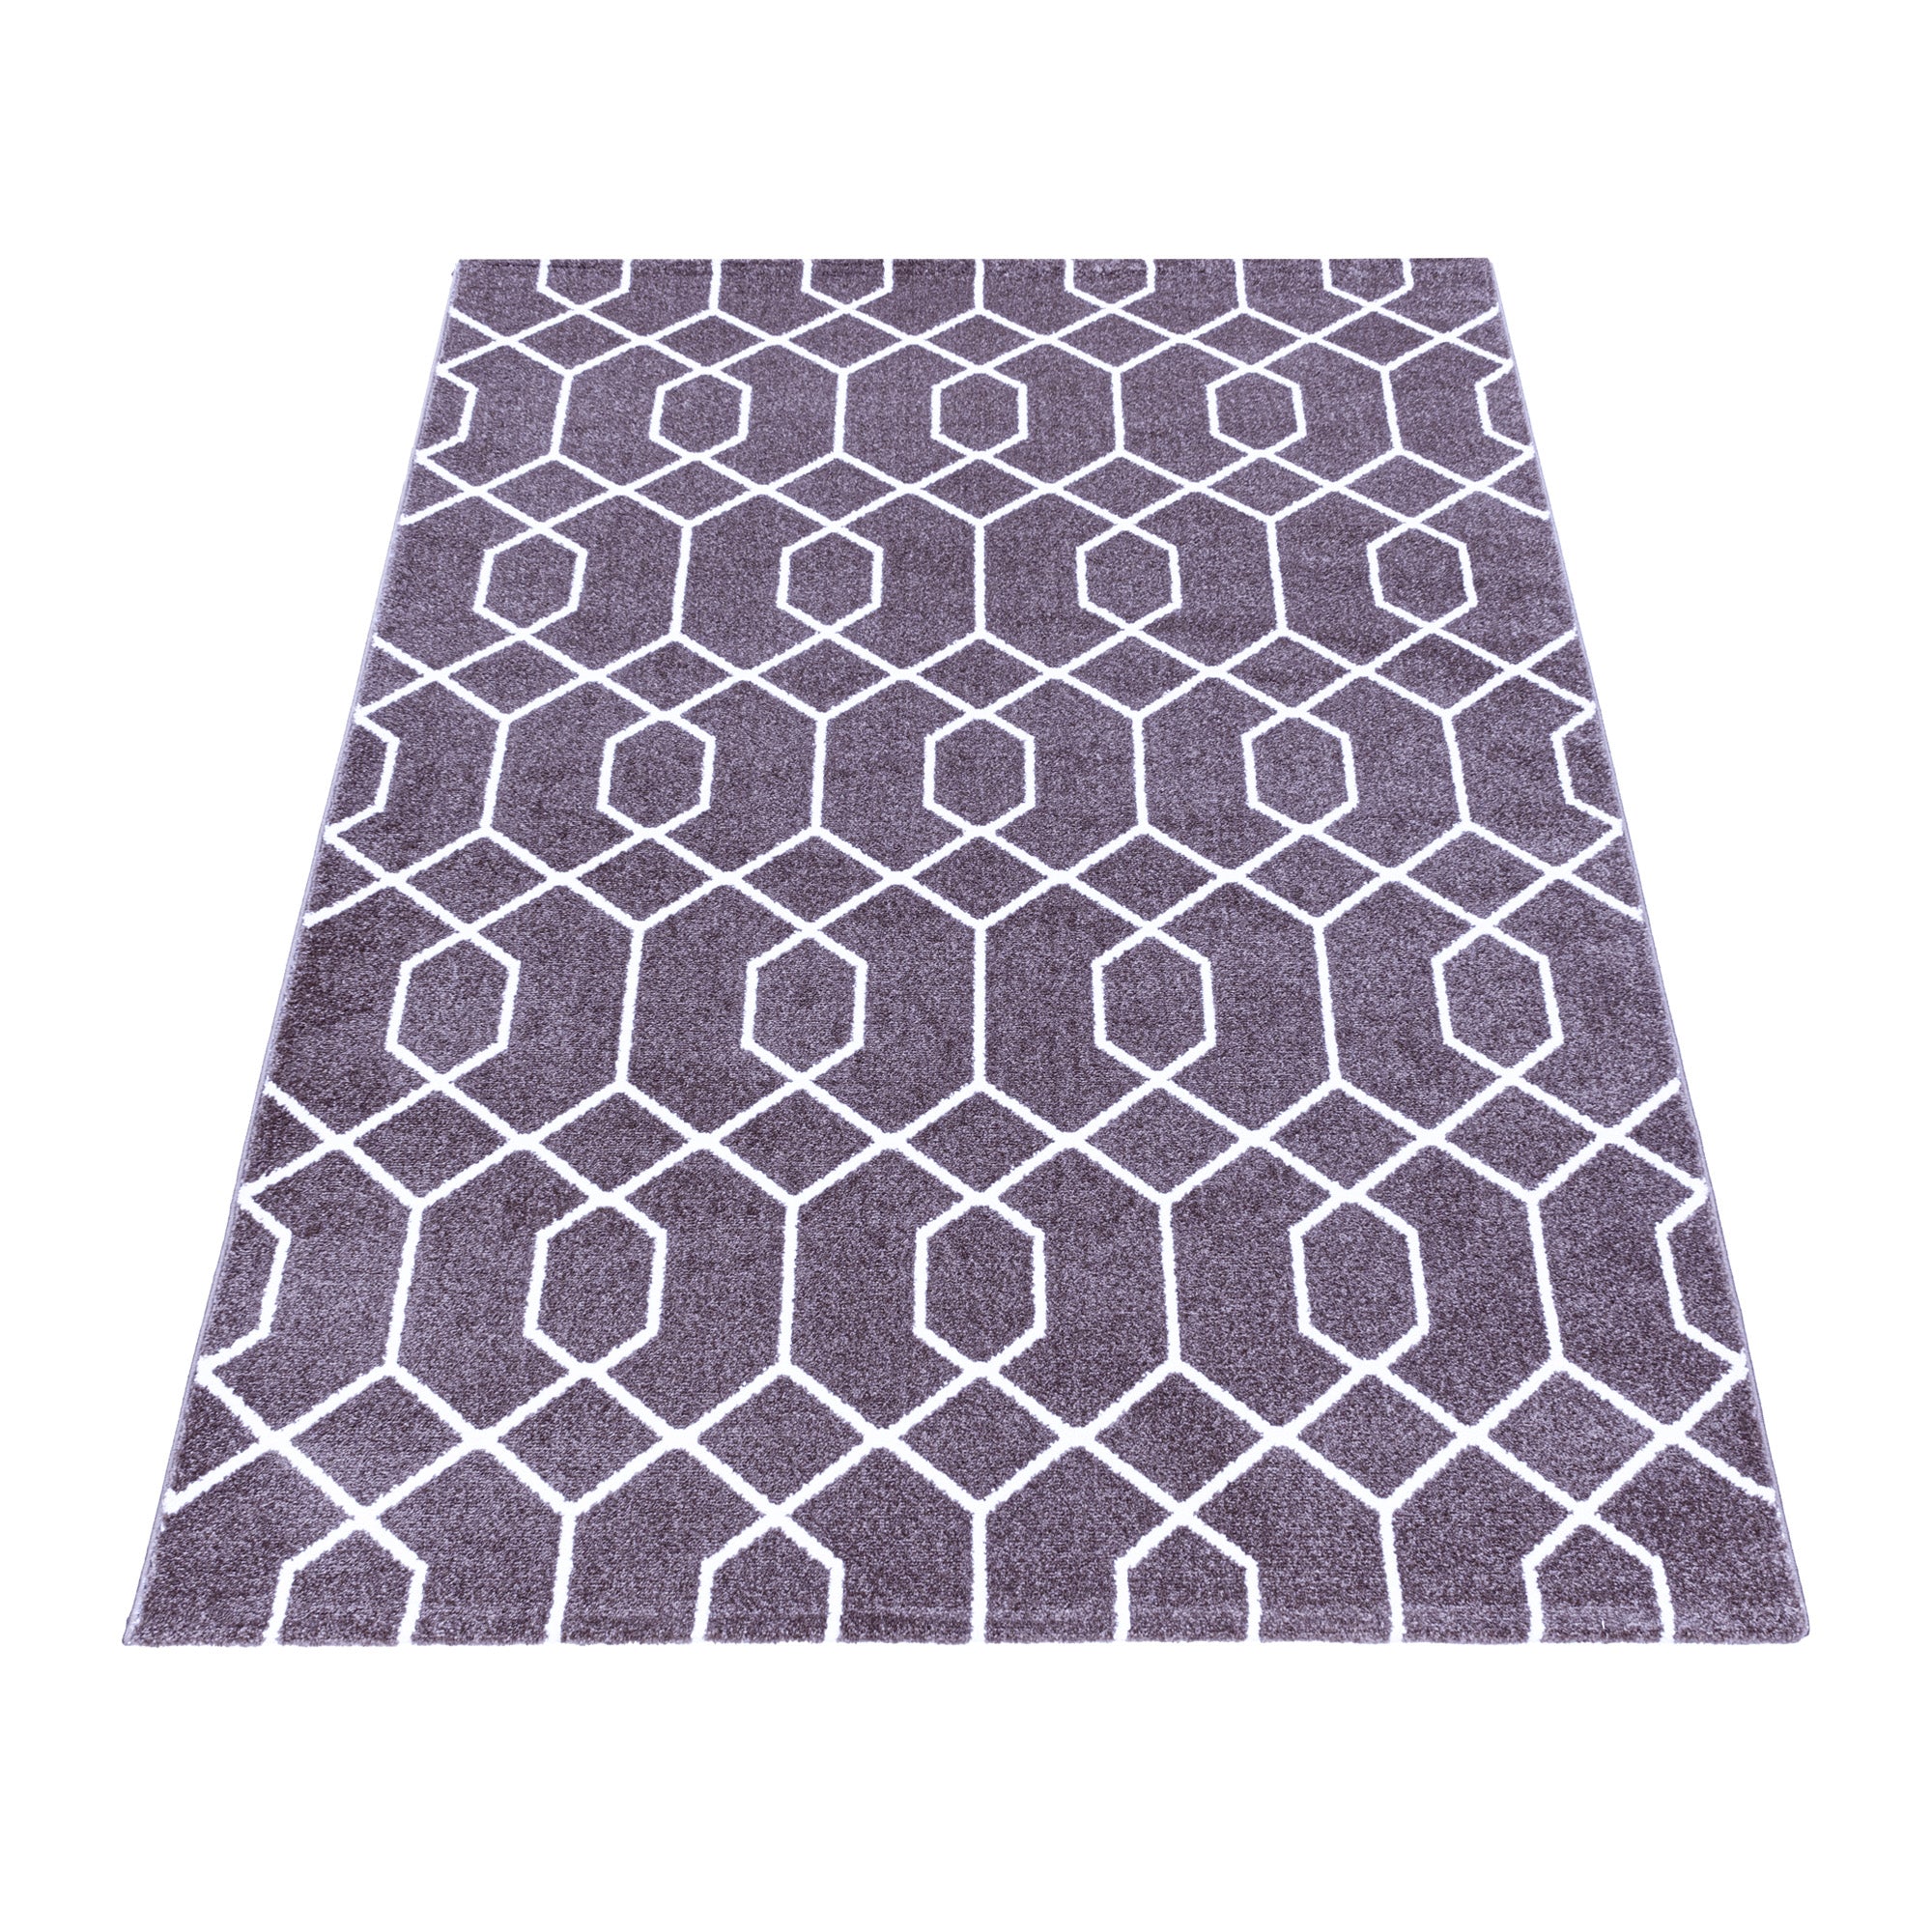 Kurzflor Cable Design Teppich Wohnzimmerteppich Zopf Muster Linien Soft Violet